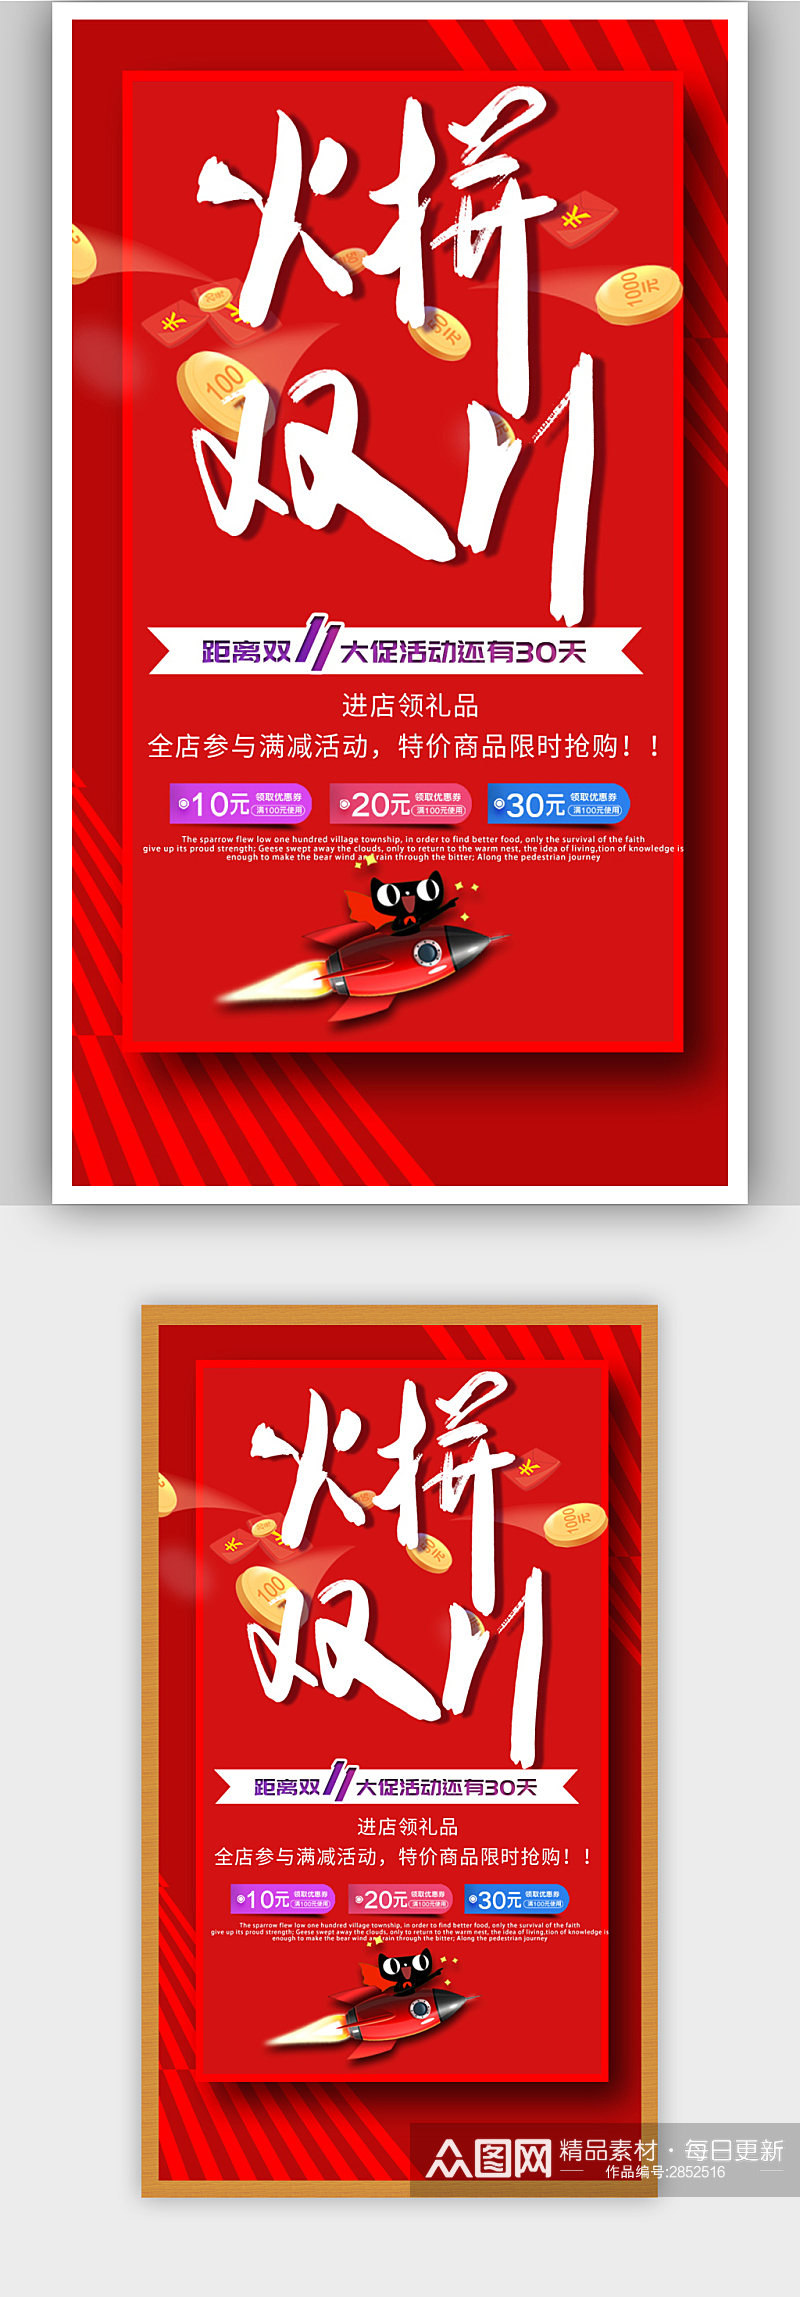 红色喜庆双11促销H5海报素材